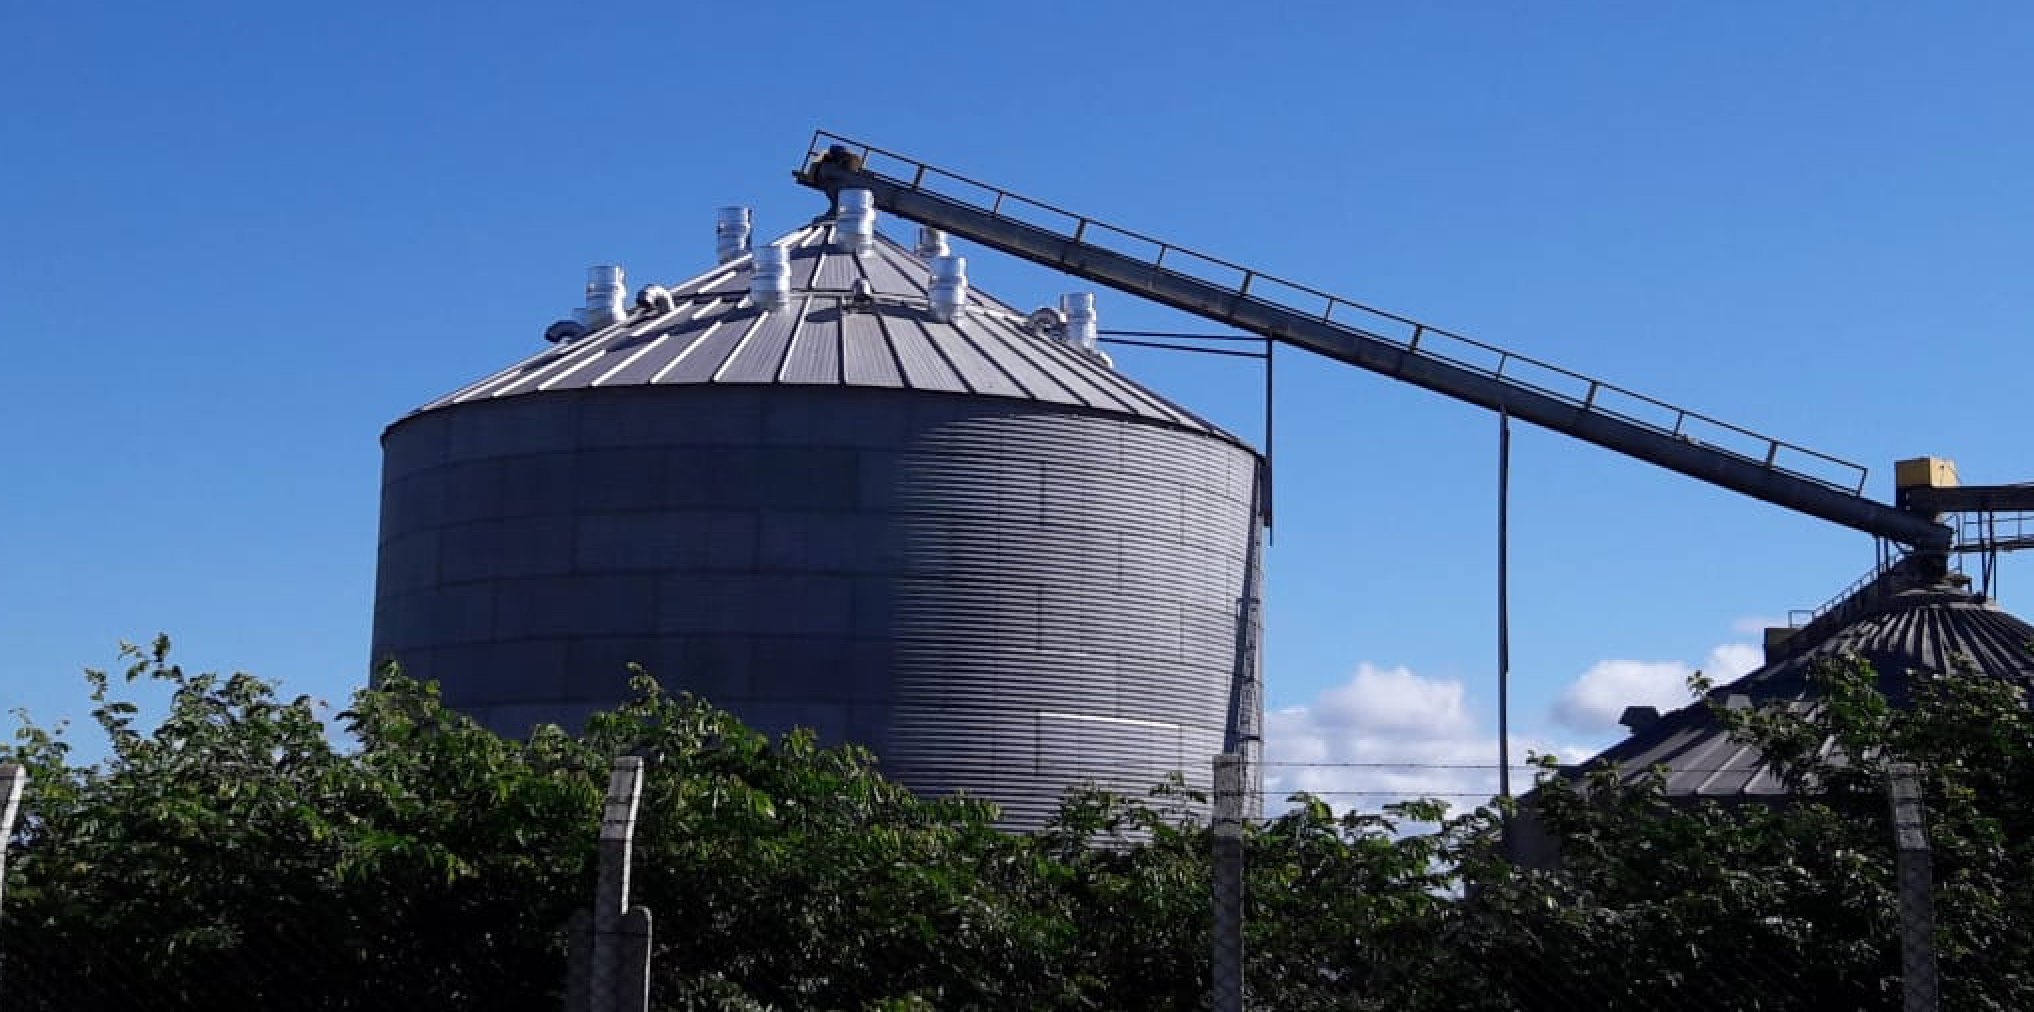 Condensação em silos: o que é e como evitá-la?